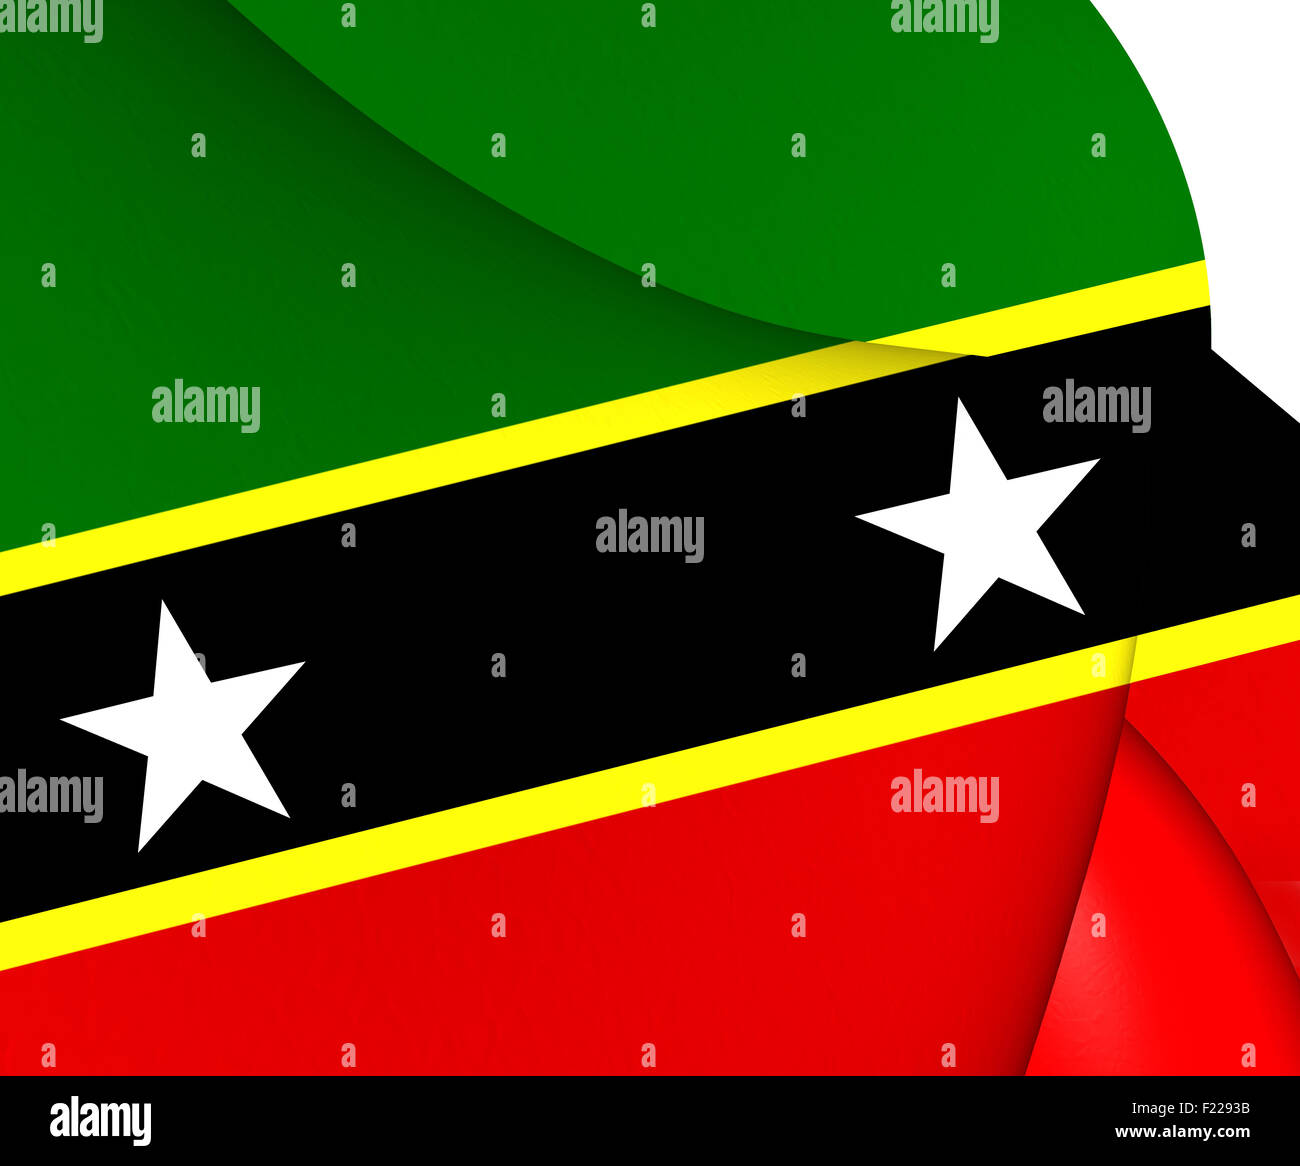 Föderation Saint Kitts und Nevis-Flagge. Hautnah. Stockfoto